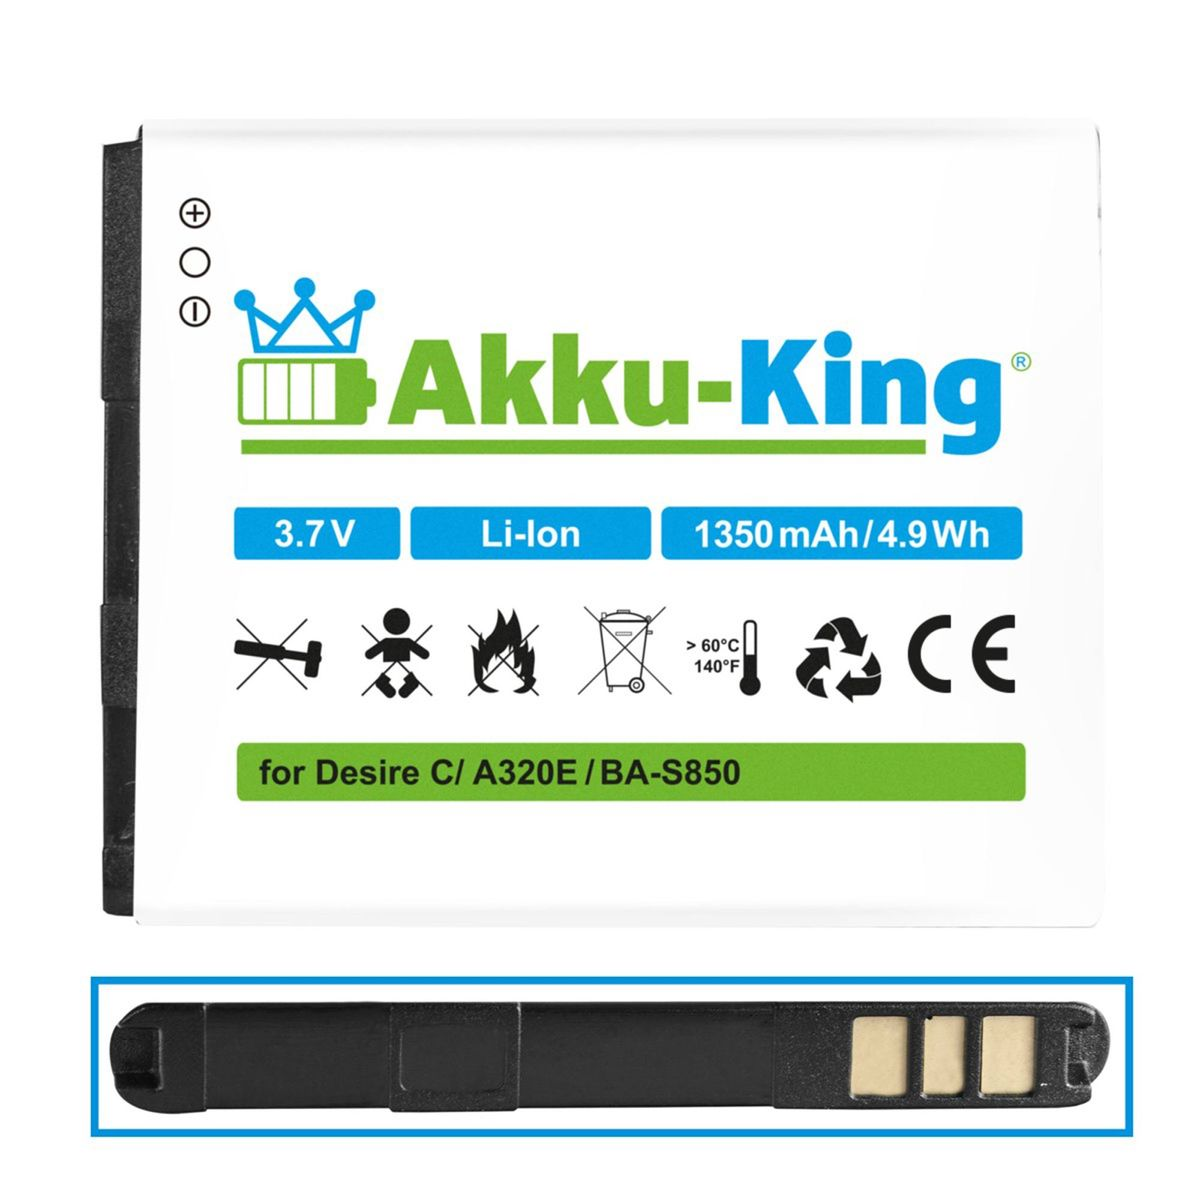 AKKU-KING BA-S850 HTC Li-Ion Akku 3.7 1350mAh mit Volt, Handy-Akku, kompatibel